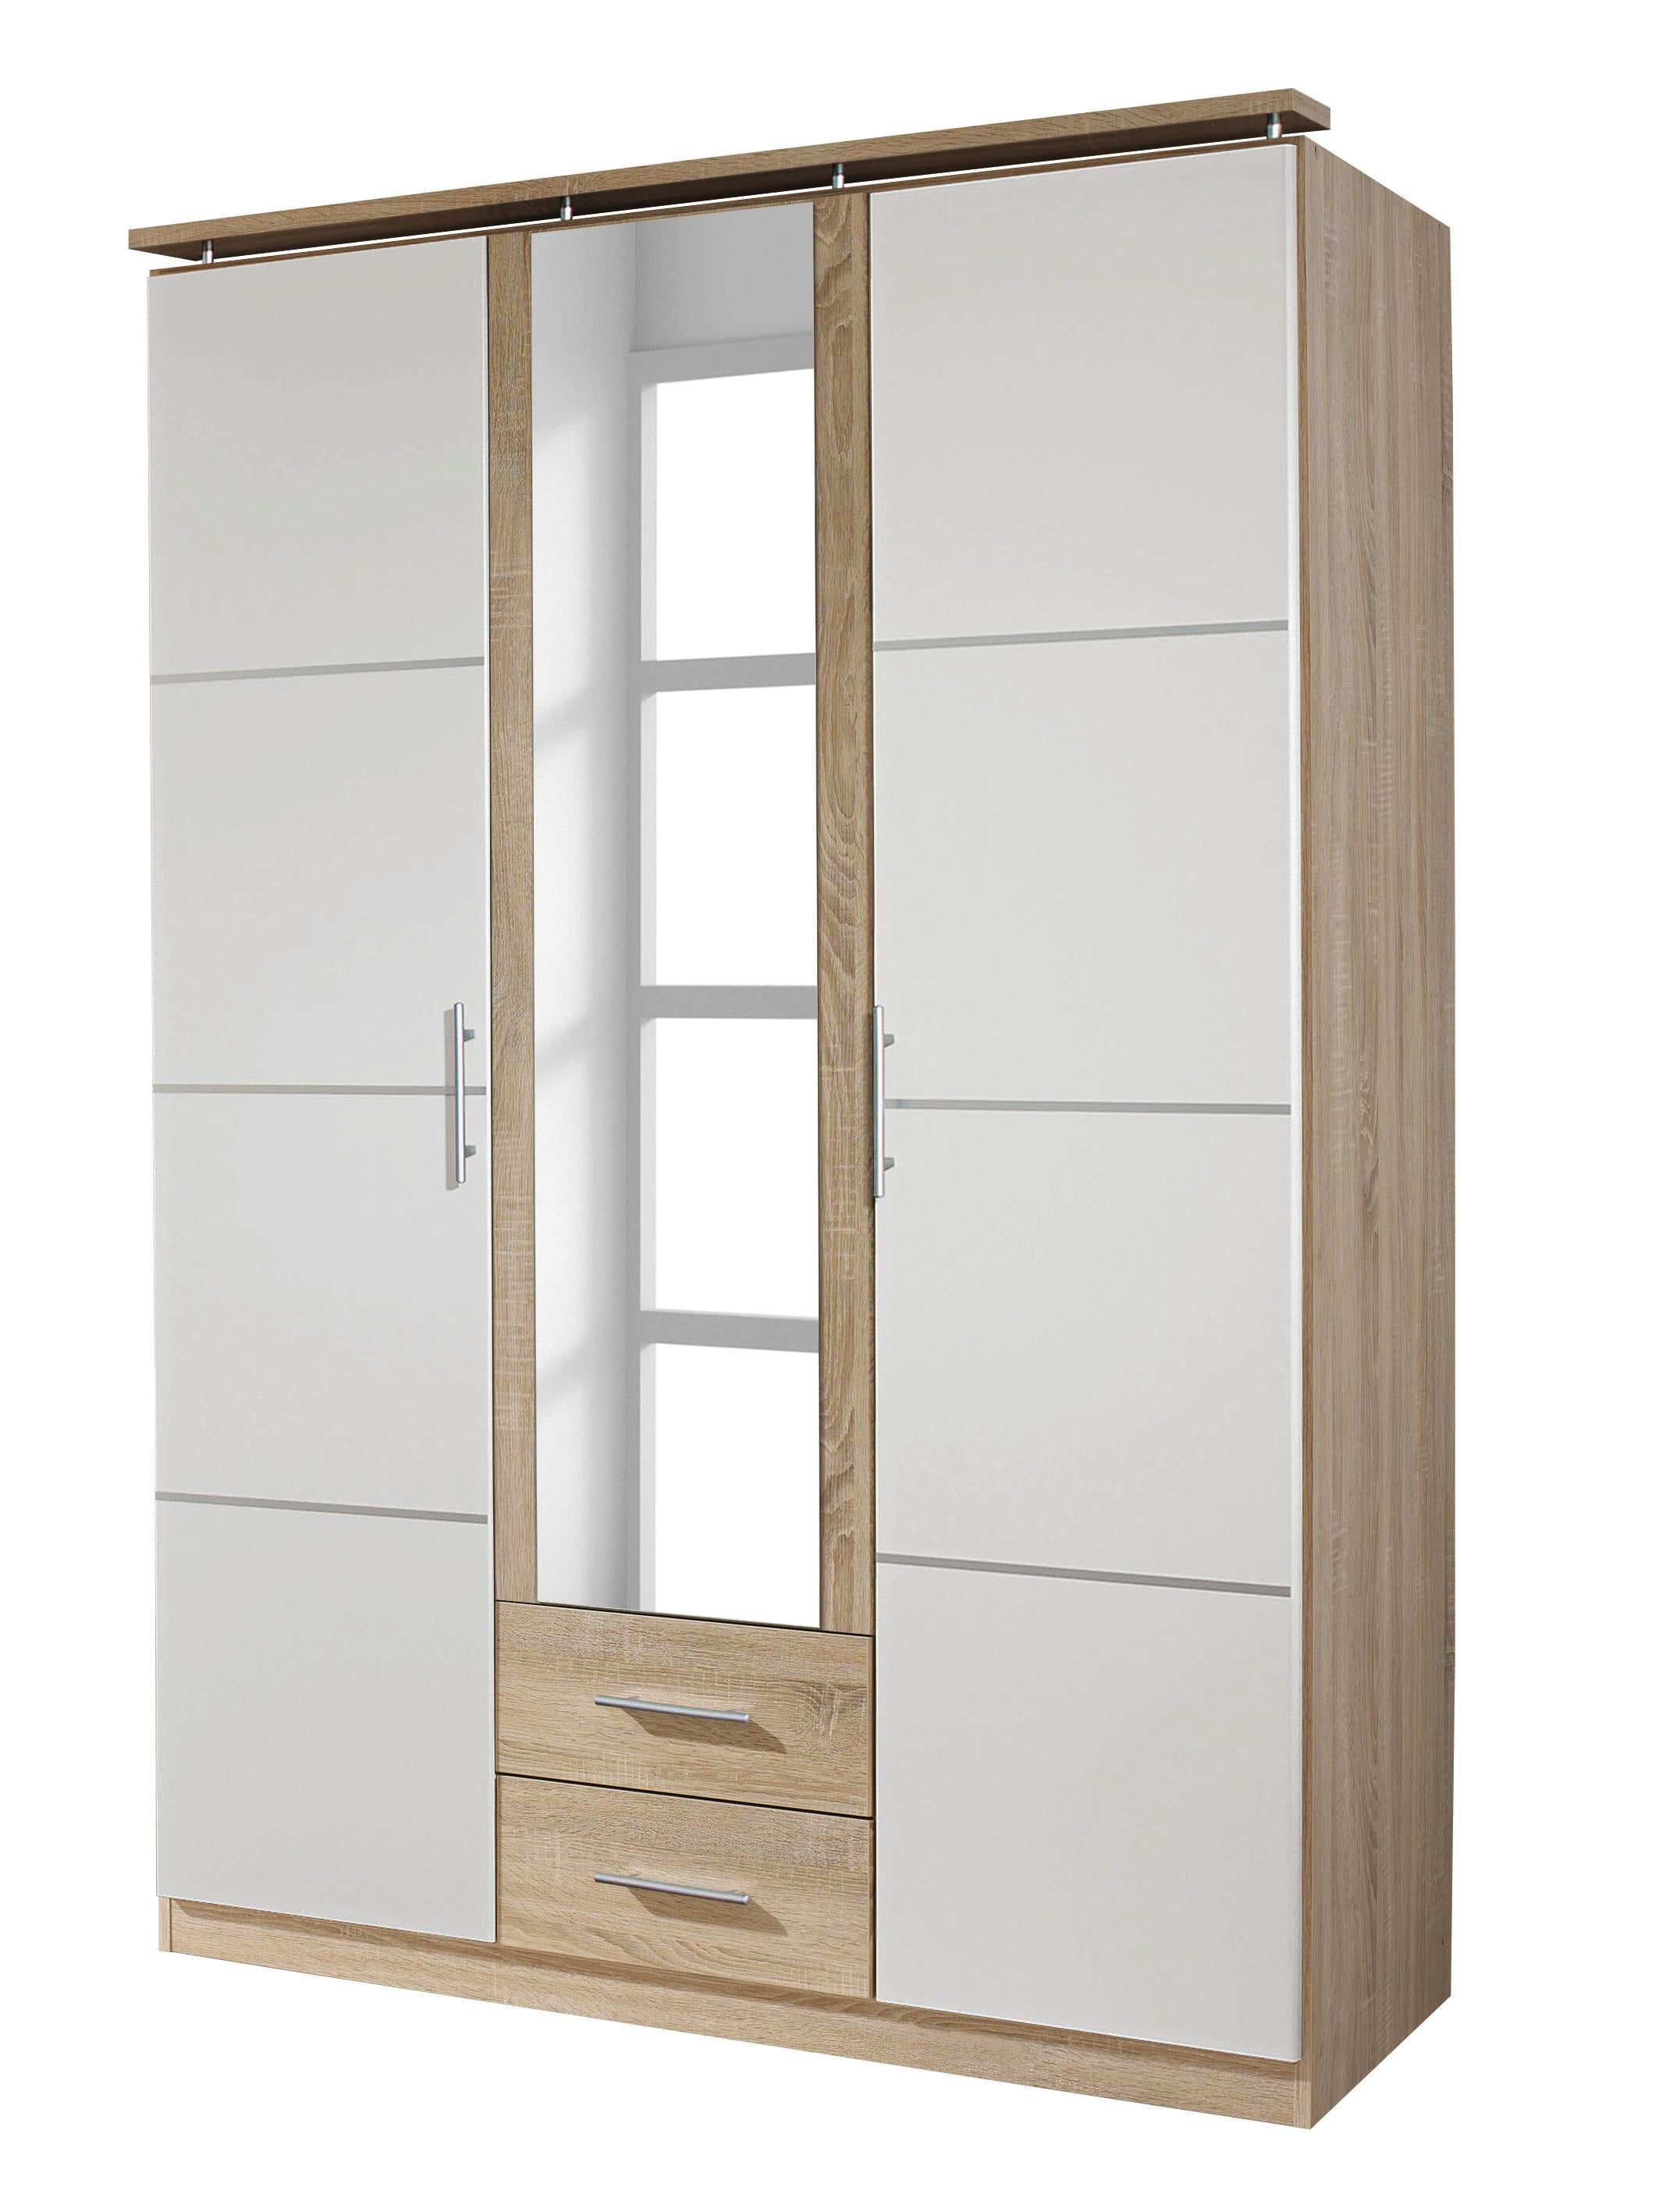 Kleiderschrank Devin weiß-braun 3-trg mit Spiegel und 2 Schubladen B 136 cm - H 201 cm - T 56 cm